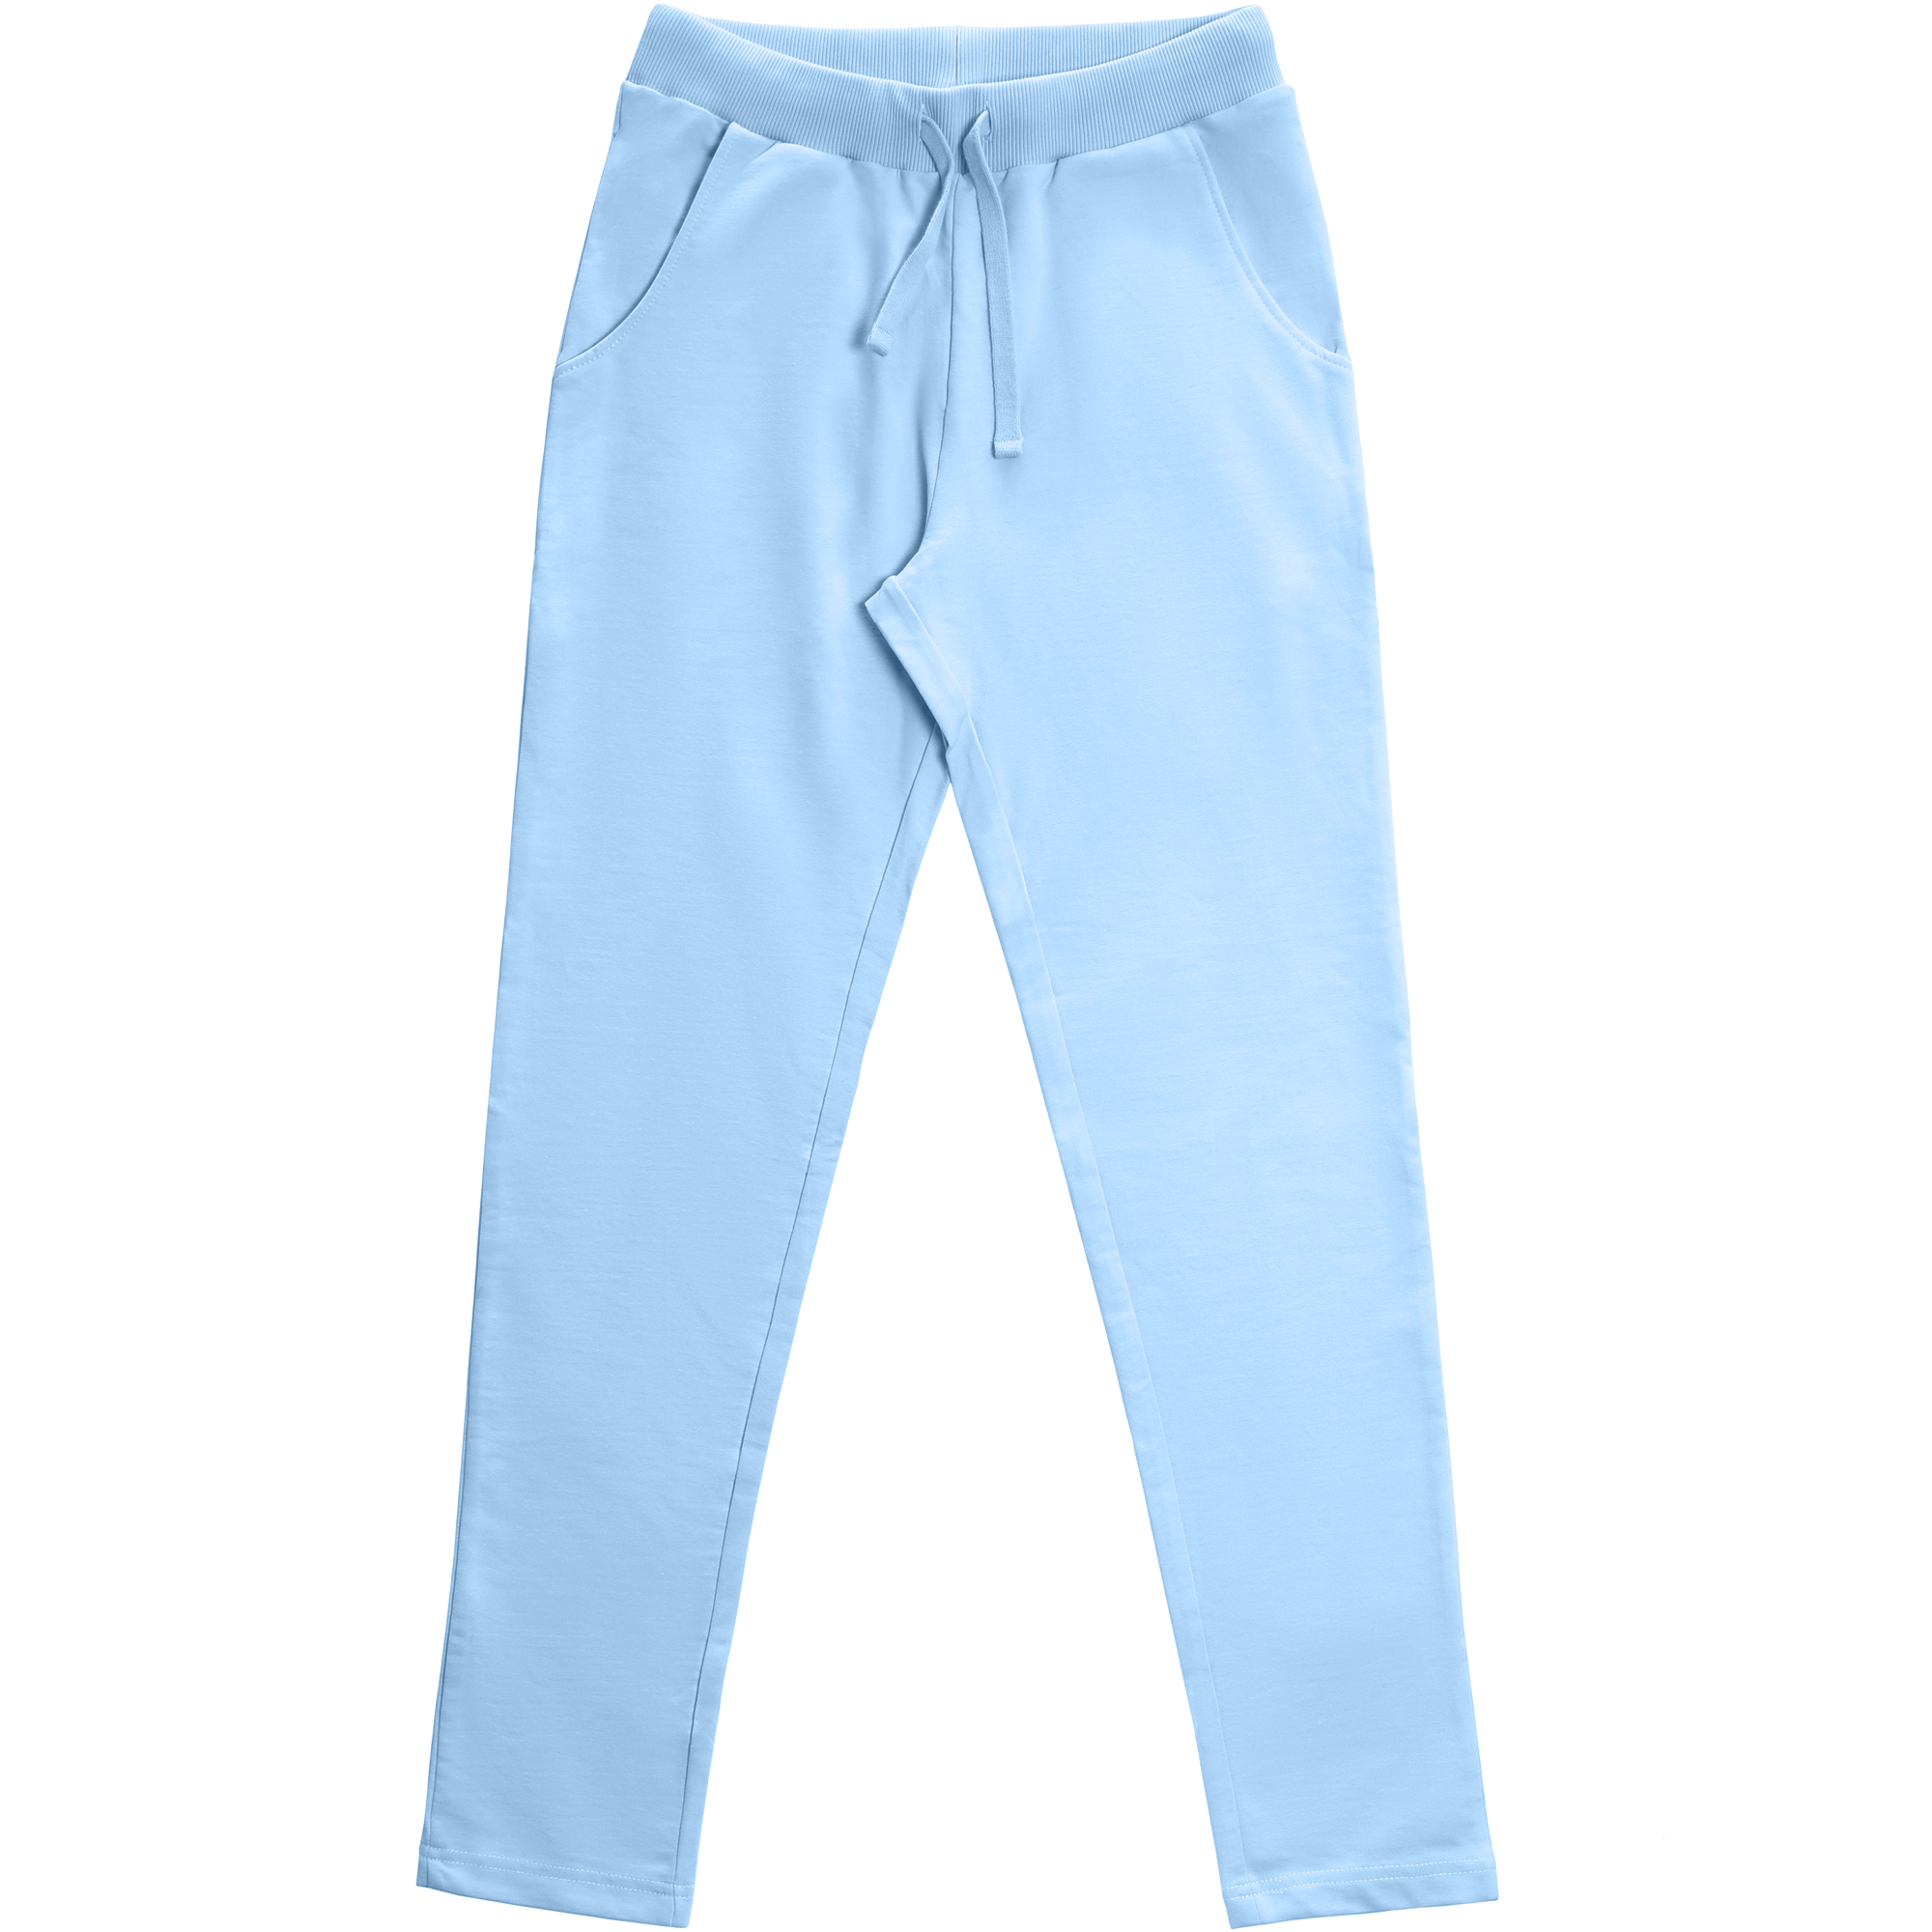 Женские брюки Birlik голубые, цвет голубой, размер XL - фото 1